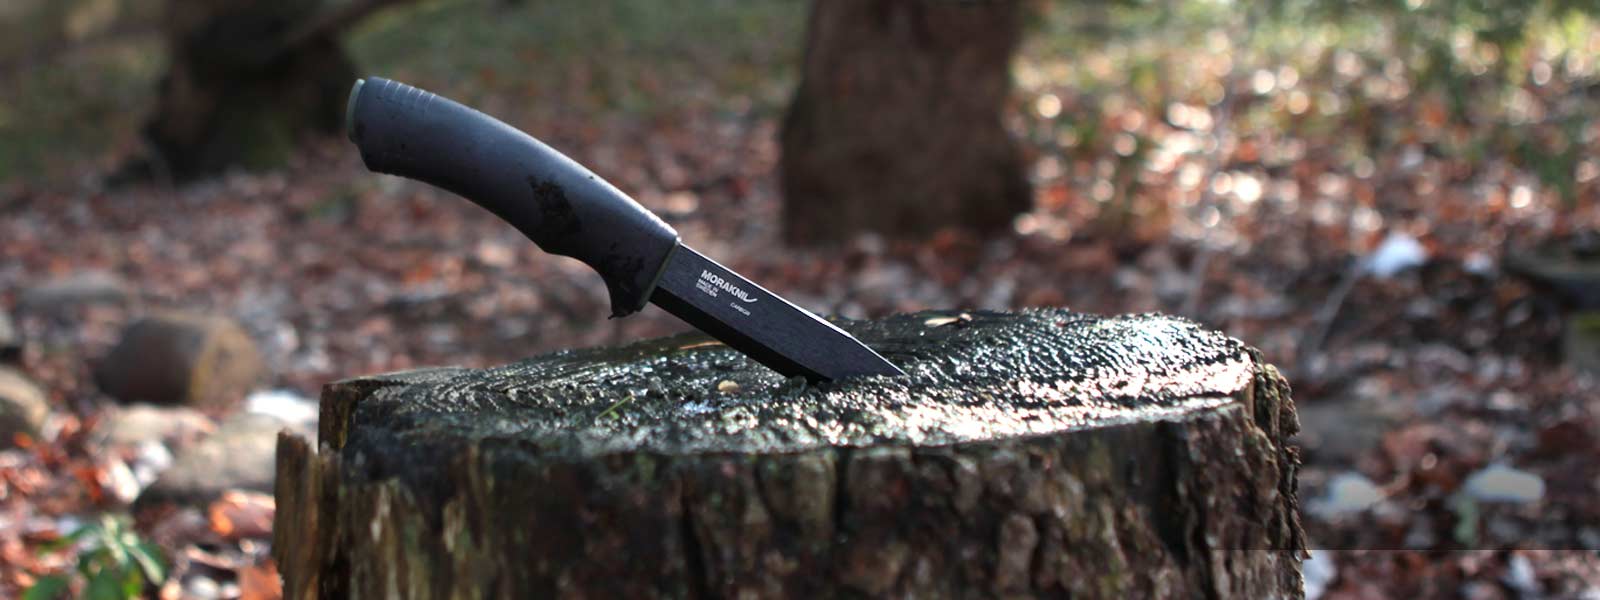 Morakniv 4 High-Carbon Steel Tactical Knife 